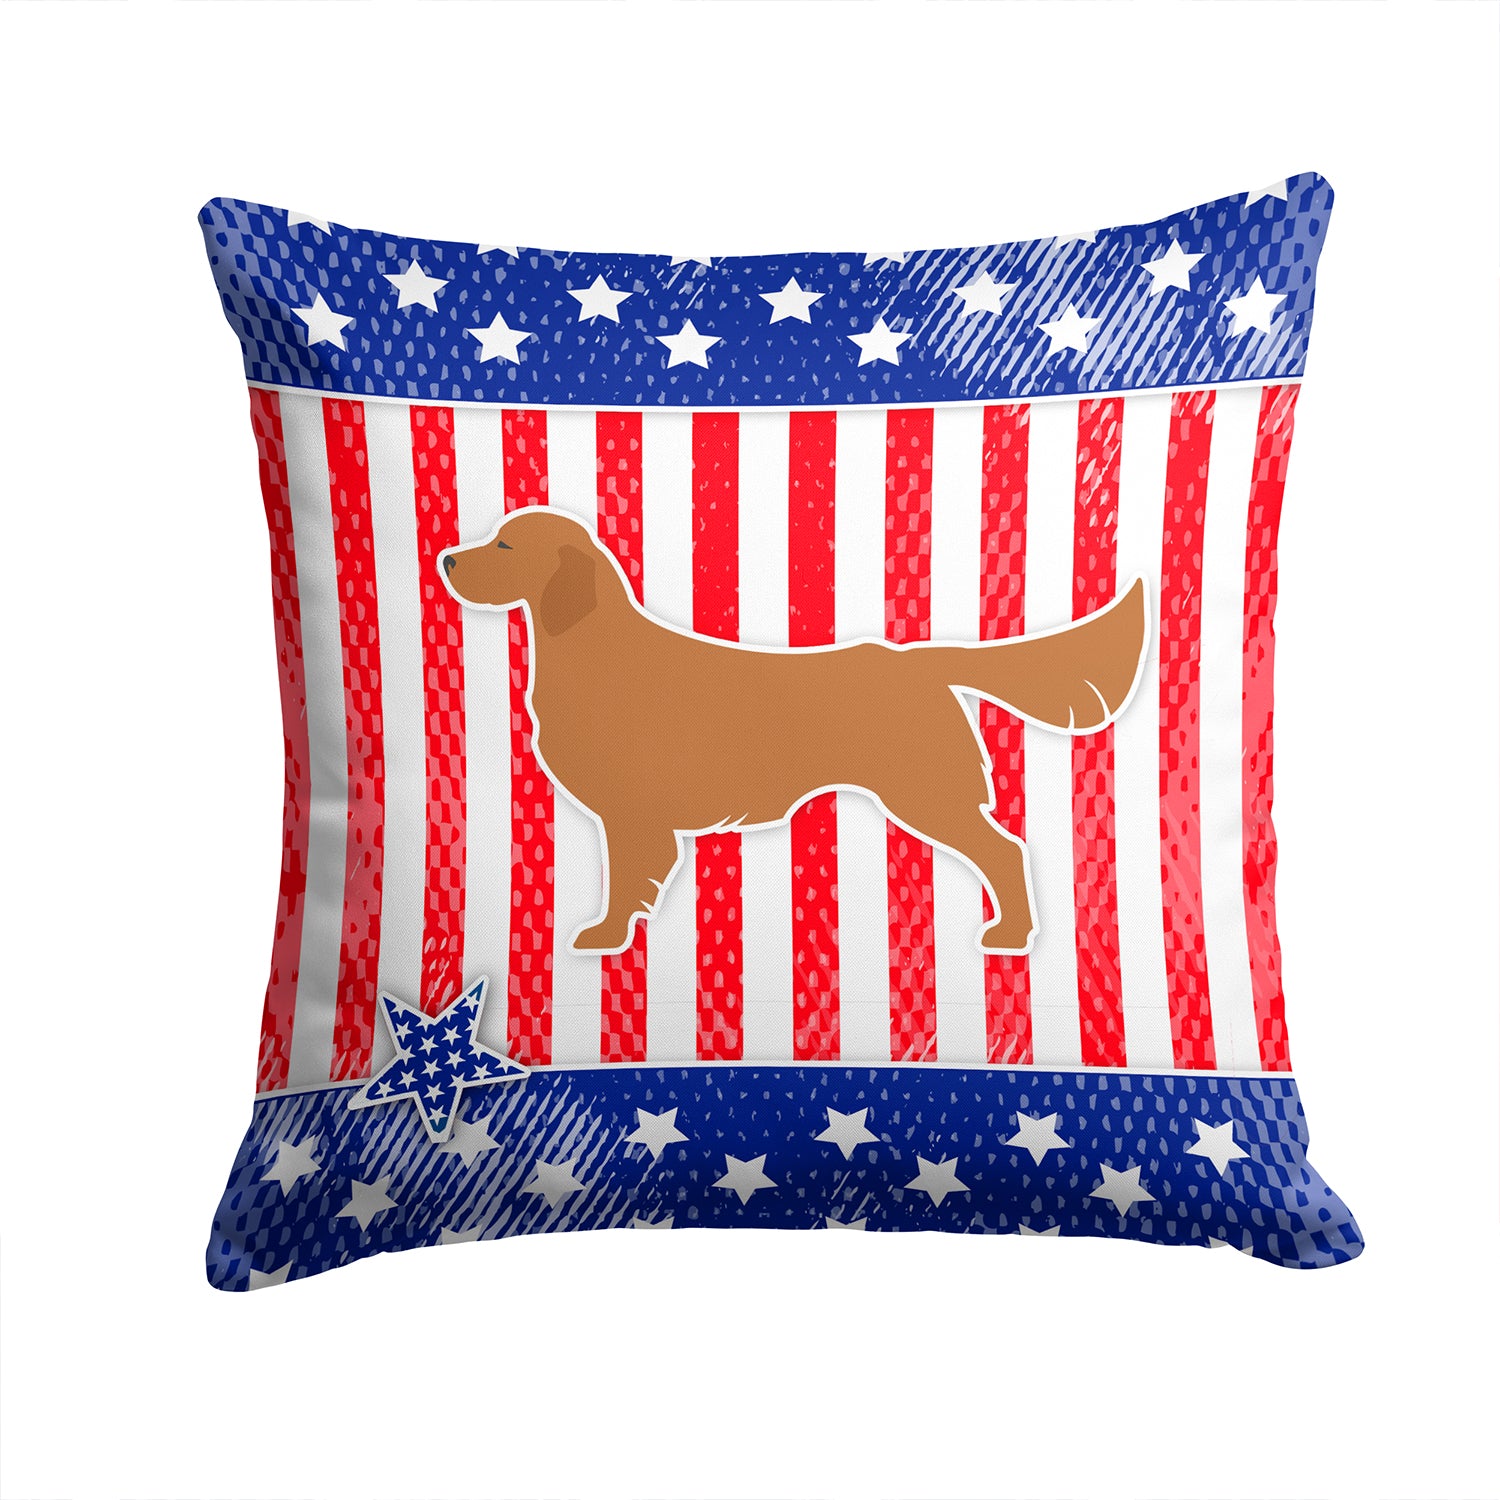 USA Patriotic Golden Retriever Fabric Decorative Pillow BB3304PW1414 - the-store.com